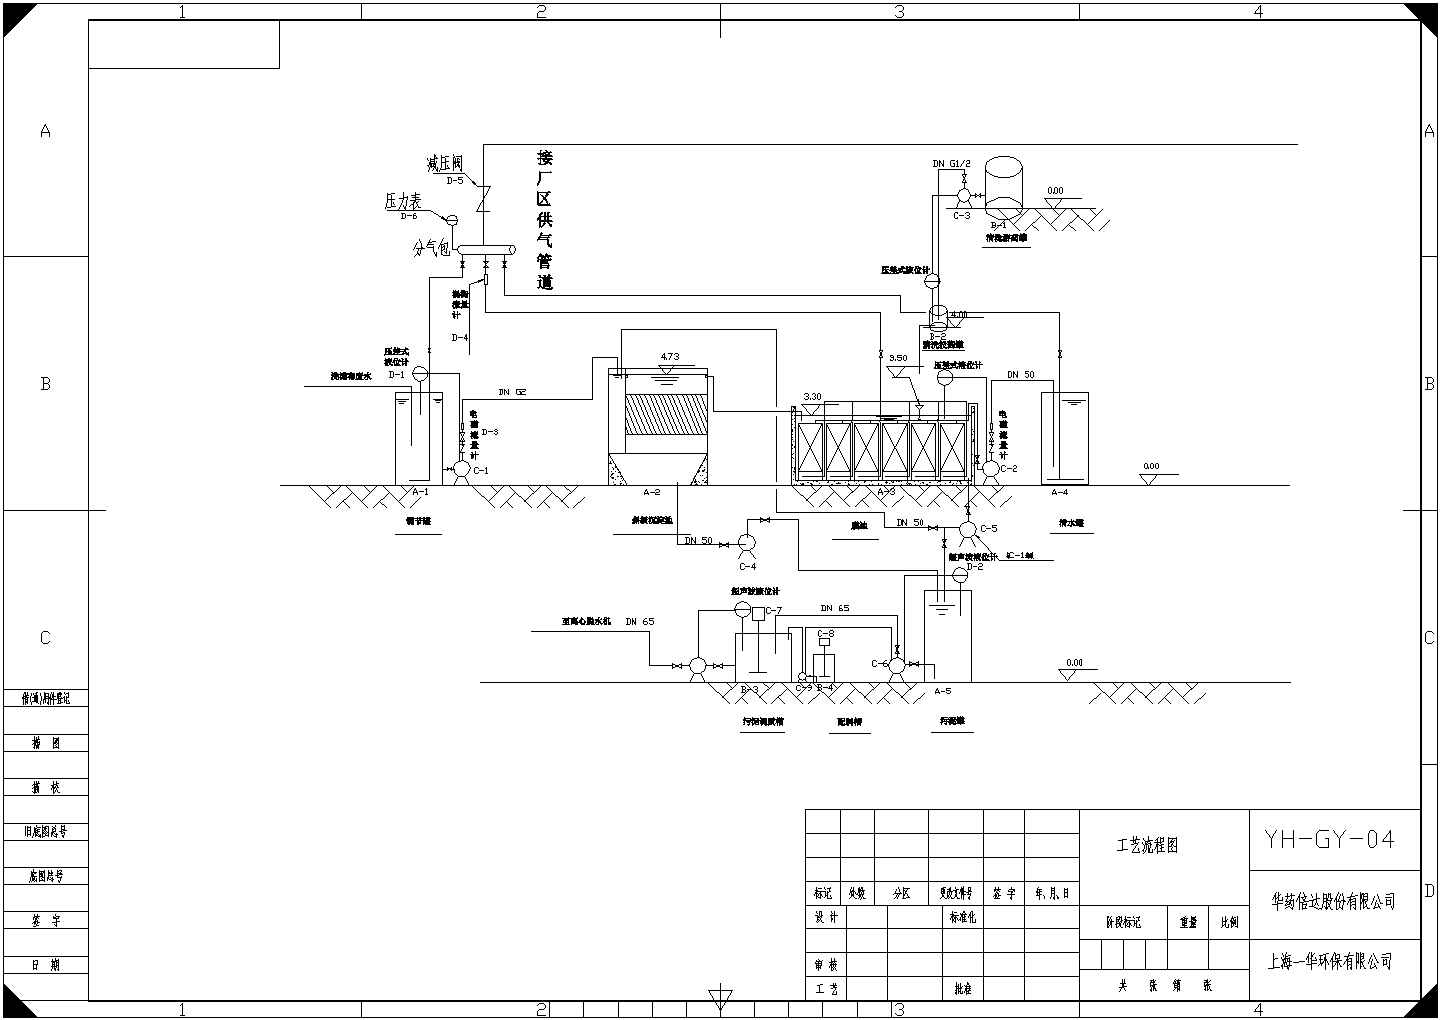 某厂滤布废水处理工程MBR工艺设计图